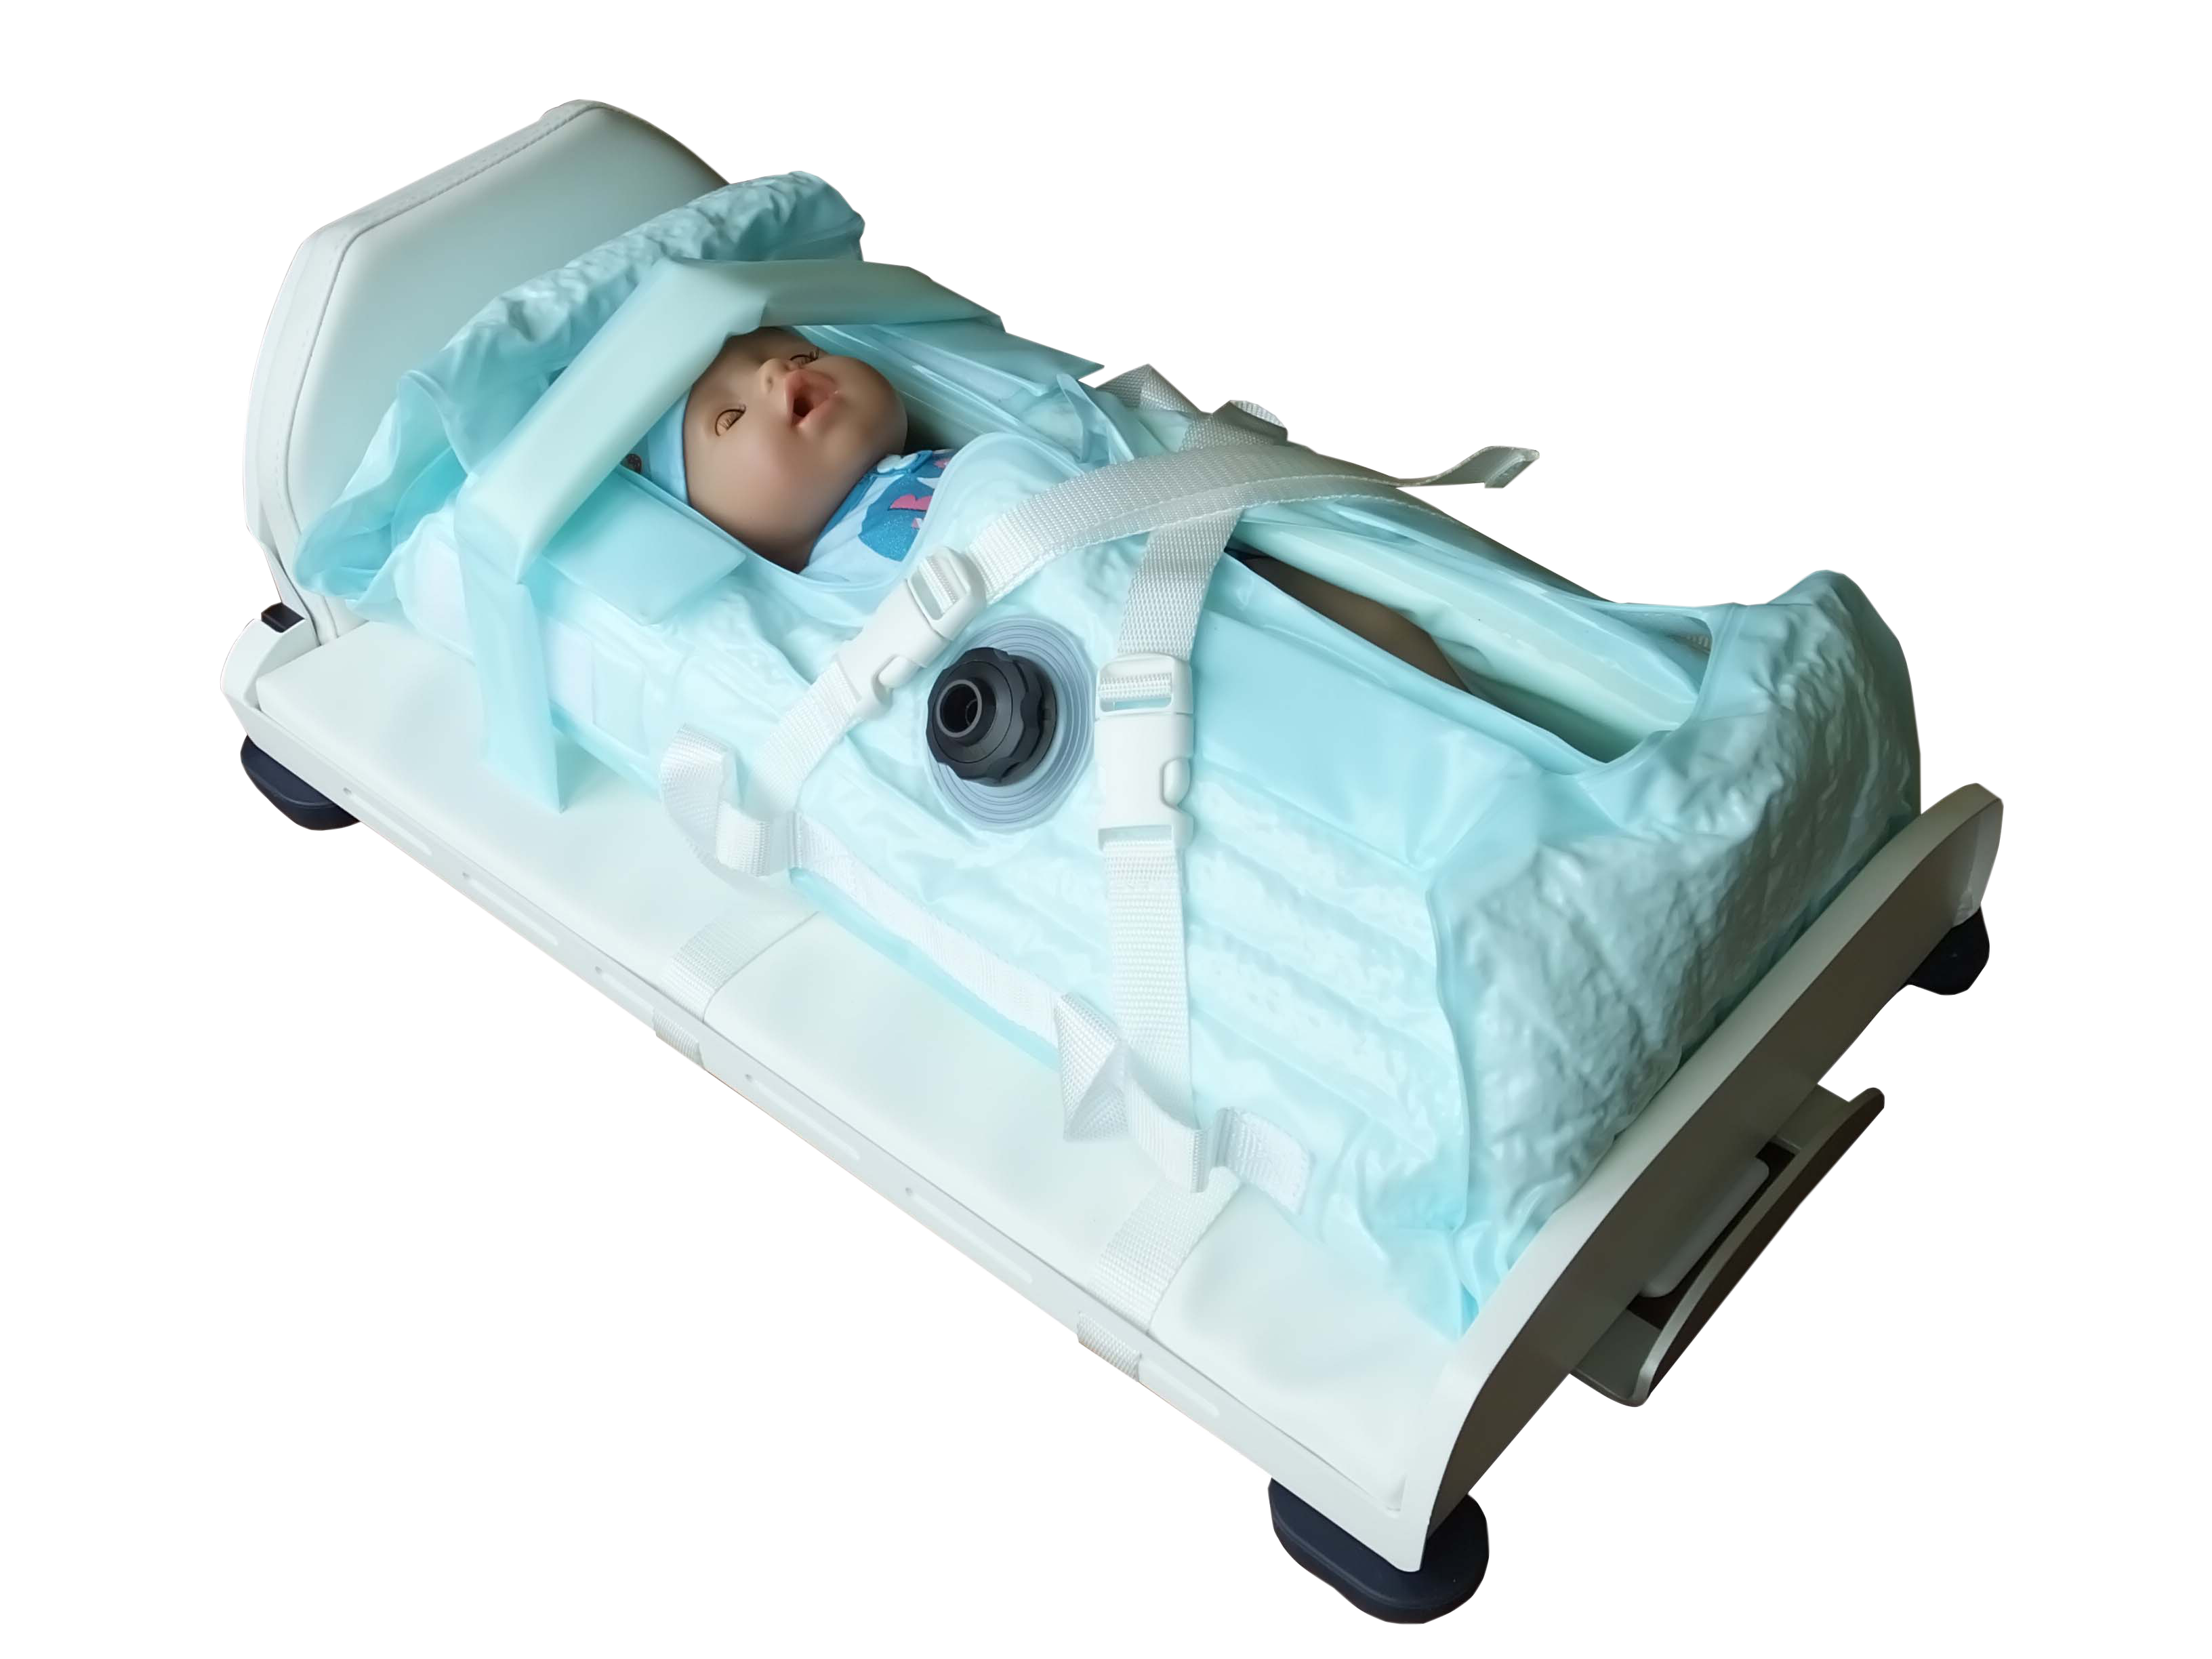 Transportní systém pro přepravu novorozenců v inkubátoru